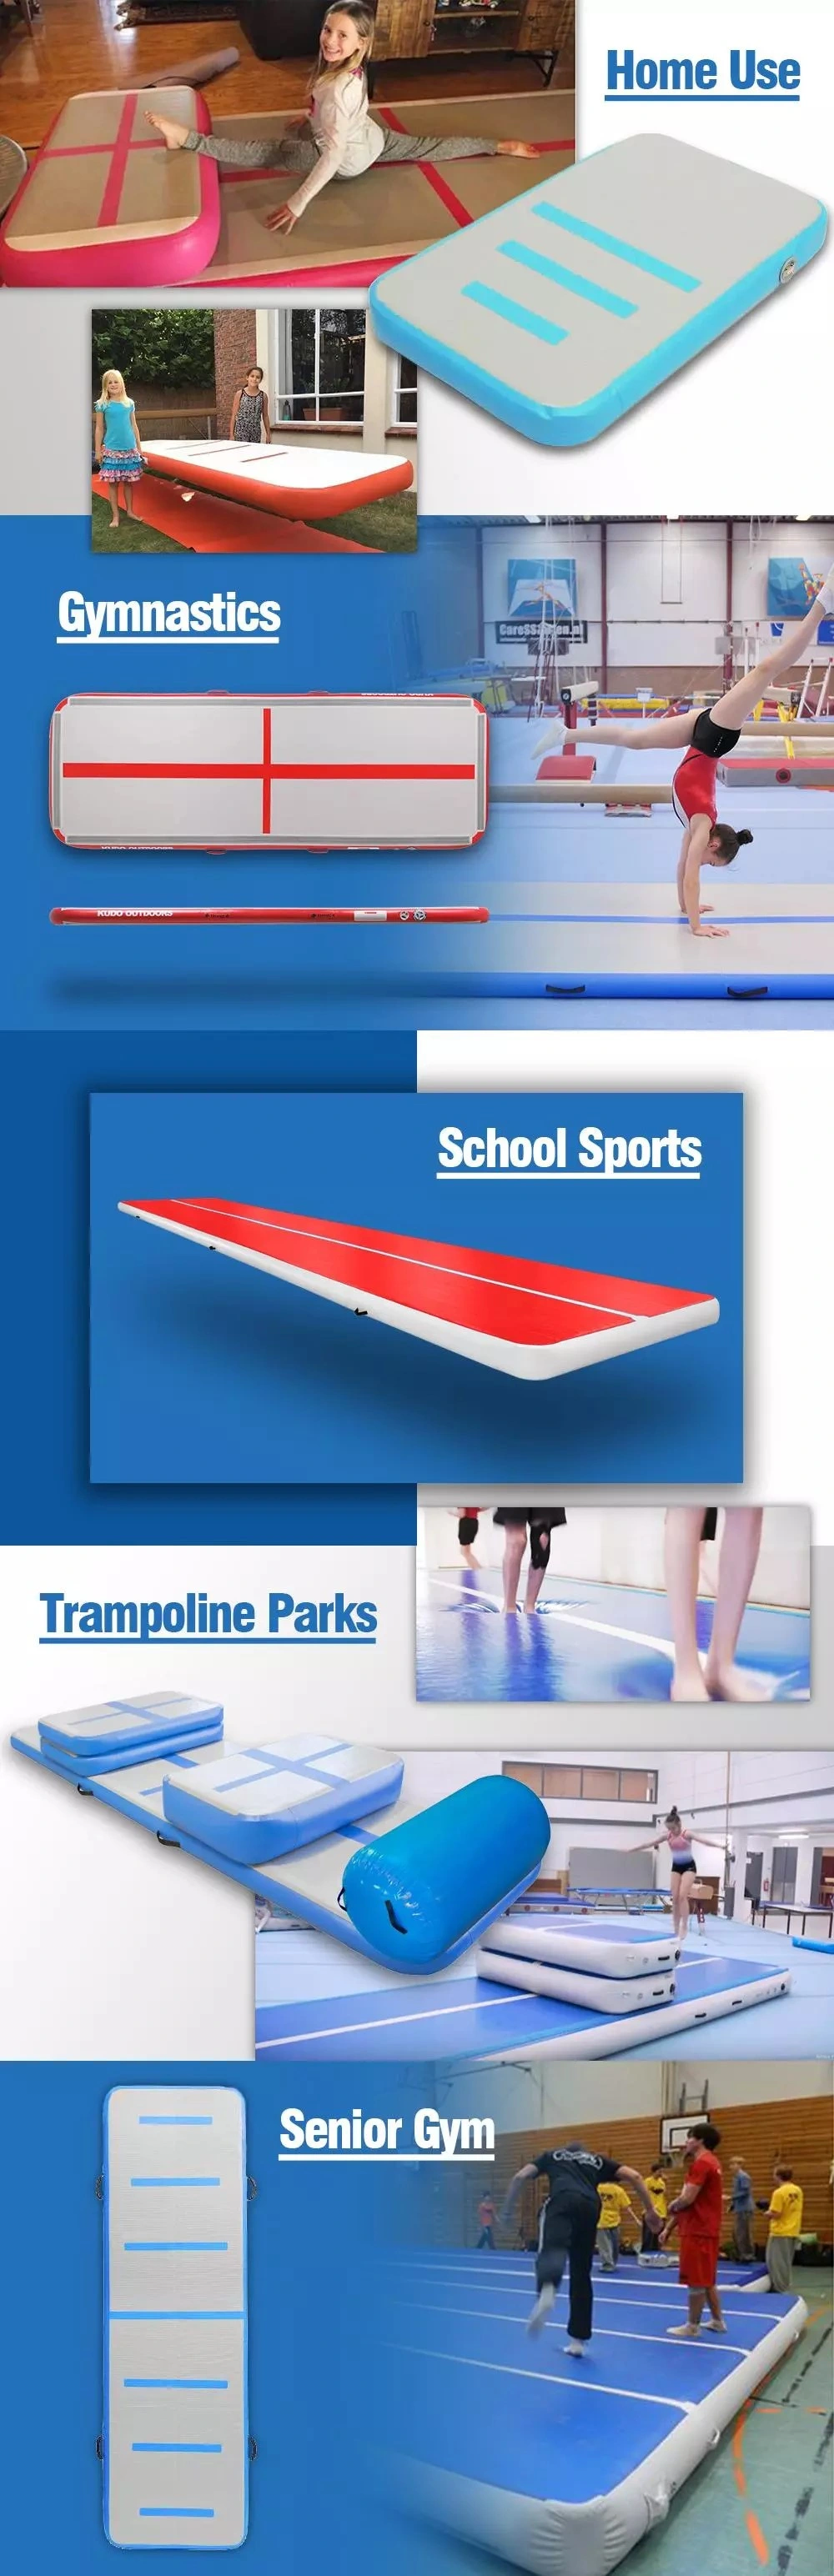 Inflatable Air Blocks Air Tumble Mat Air Track for Gymnastics